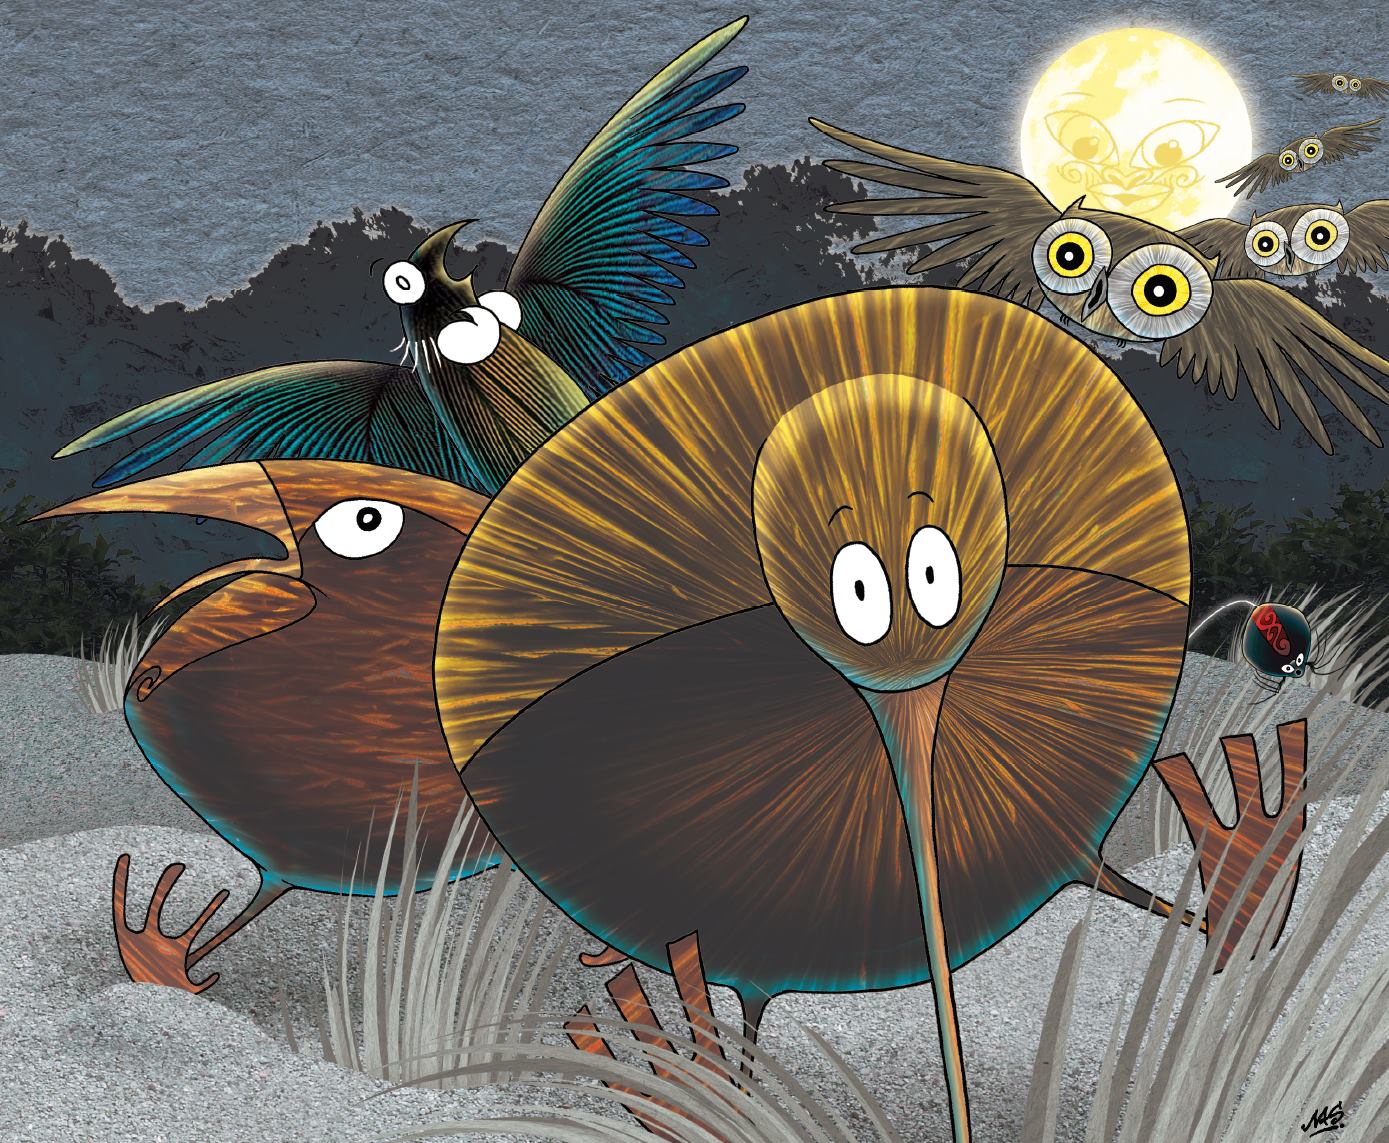 The Little Kiwis Matariki children's book